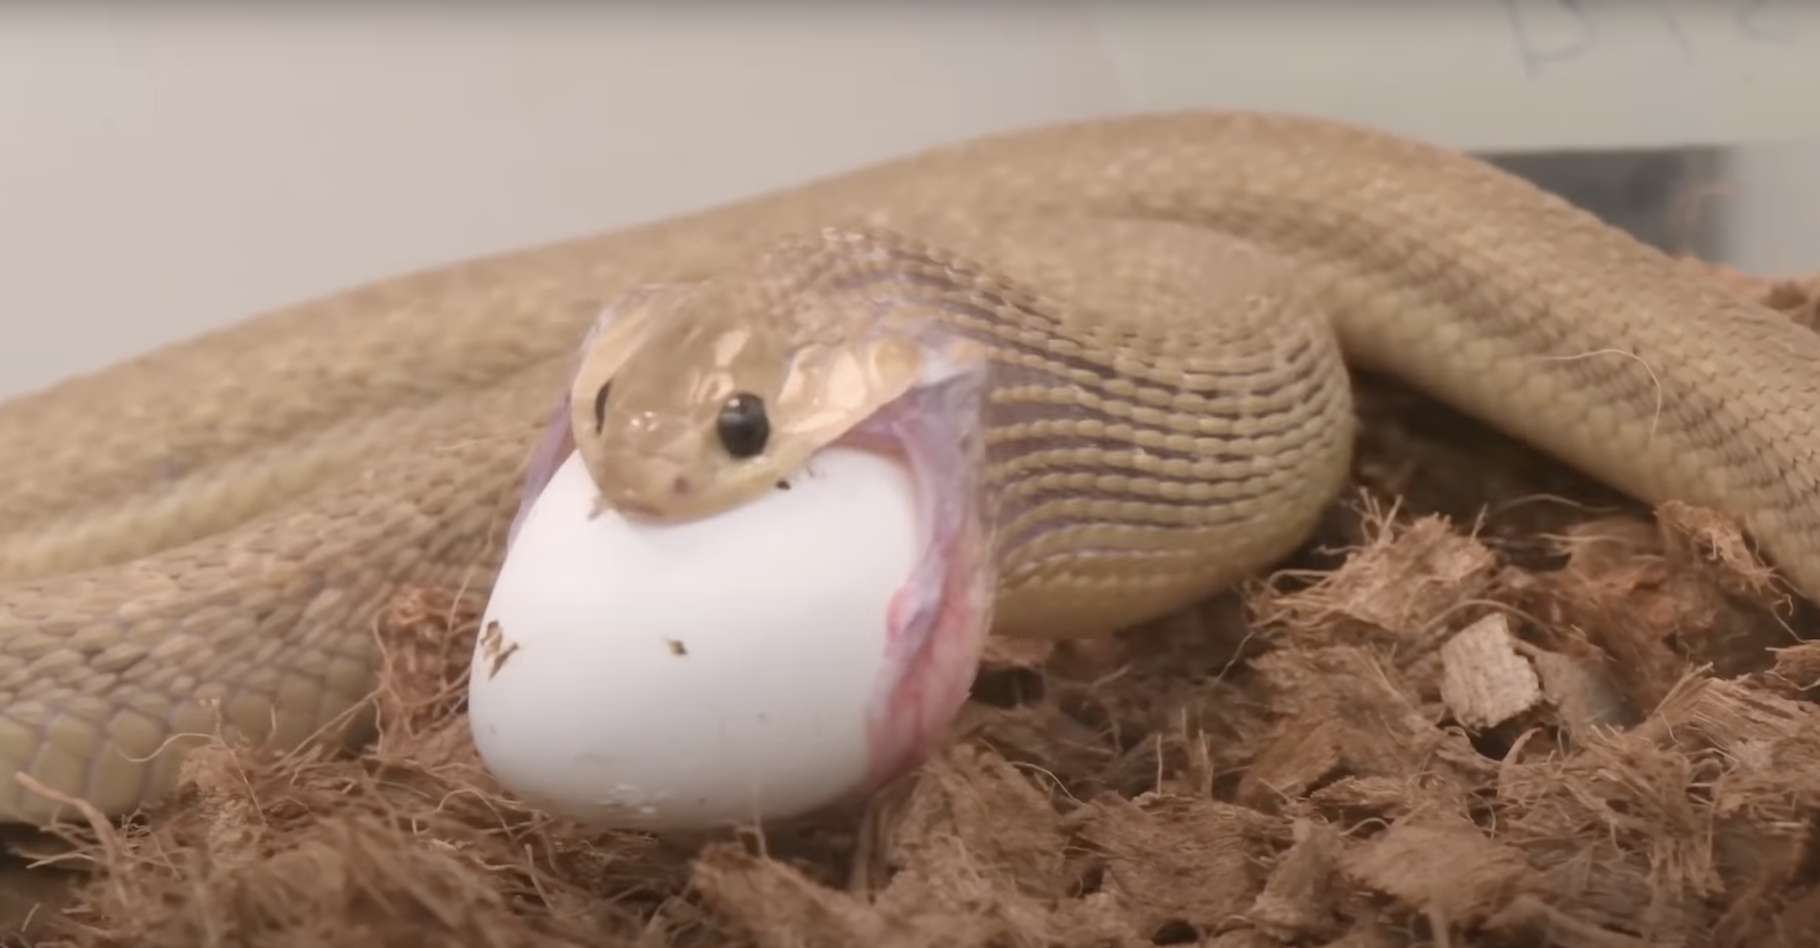 Cet étonnant petit serpent avale des œufs plusieurs fois plus gros que lui !